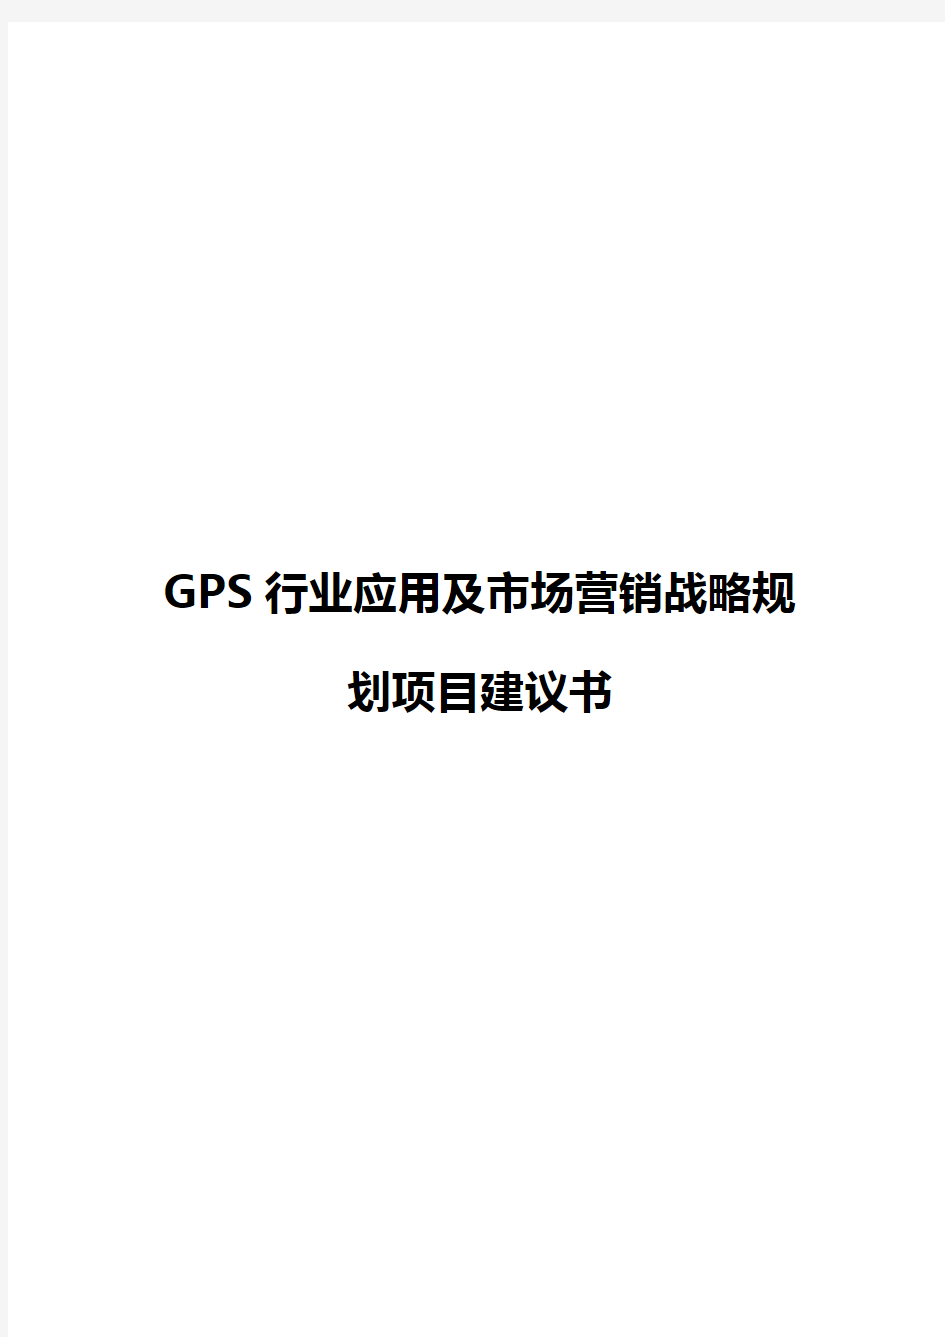 【审报完稿】GPS行业应用及市场营销战略规划项目商业计划书